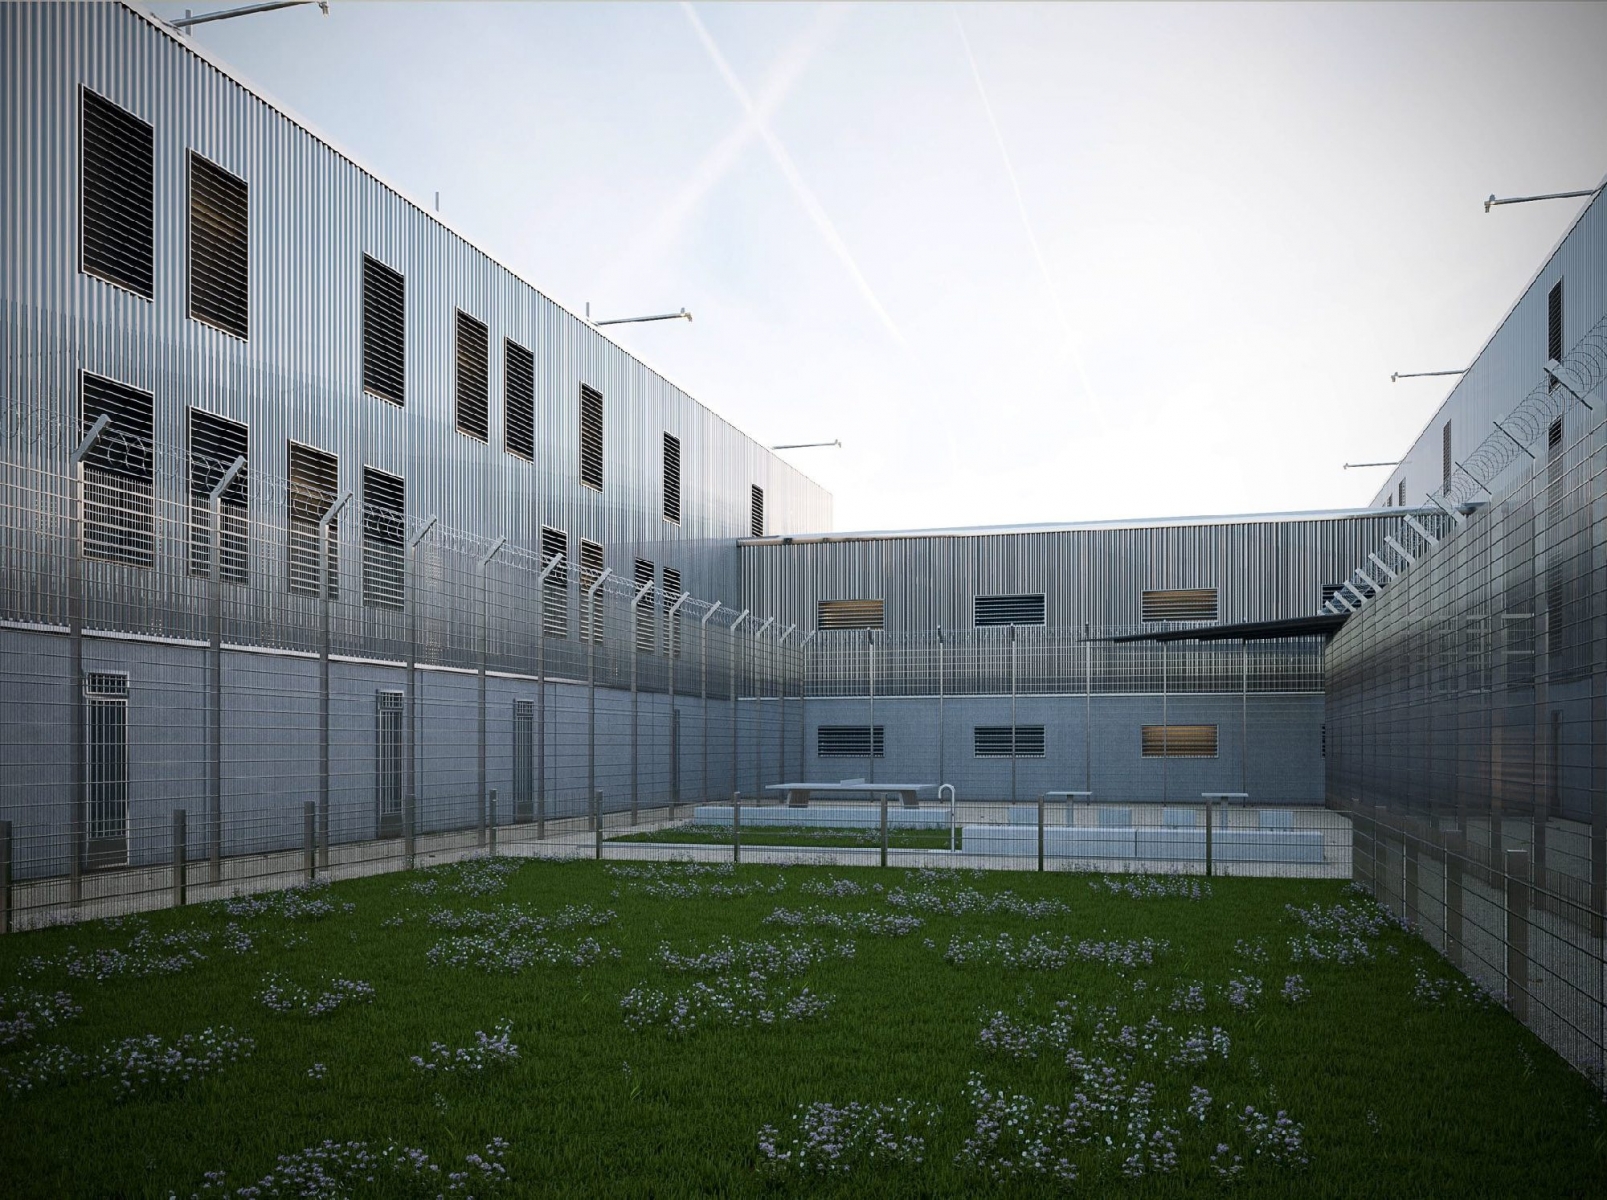 HANDOUT - Image de synthese d'une cour interieur du projet de nouvel etablissement penitentiaire Les Dardelles. (Etat de Geneve) *** NO SALES, DARF NUR MIT VOLLSTAENDIGER QUELLENANGABE VERWENDET WERDEN *** SUISSE PROJET PRISON LES DARDELLES